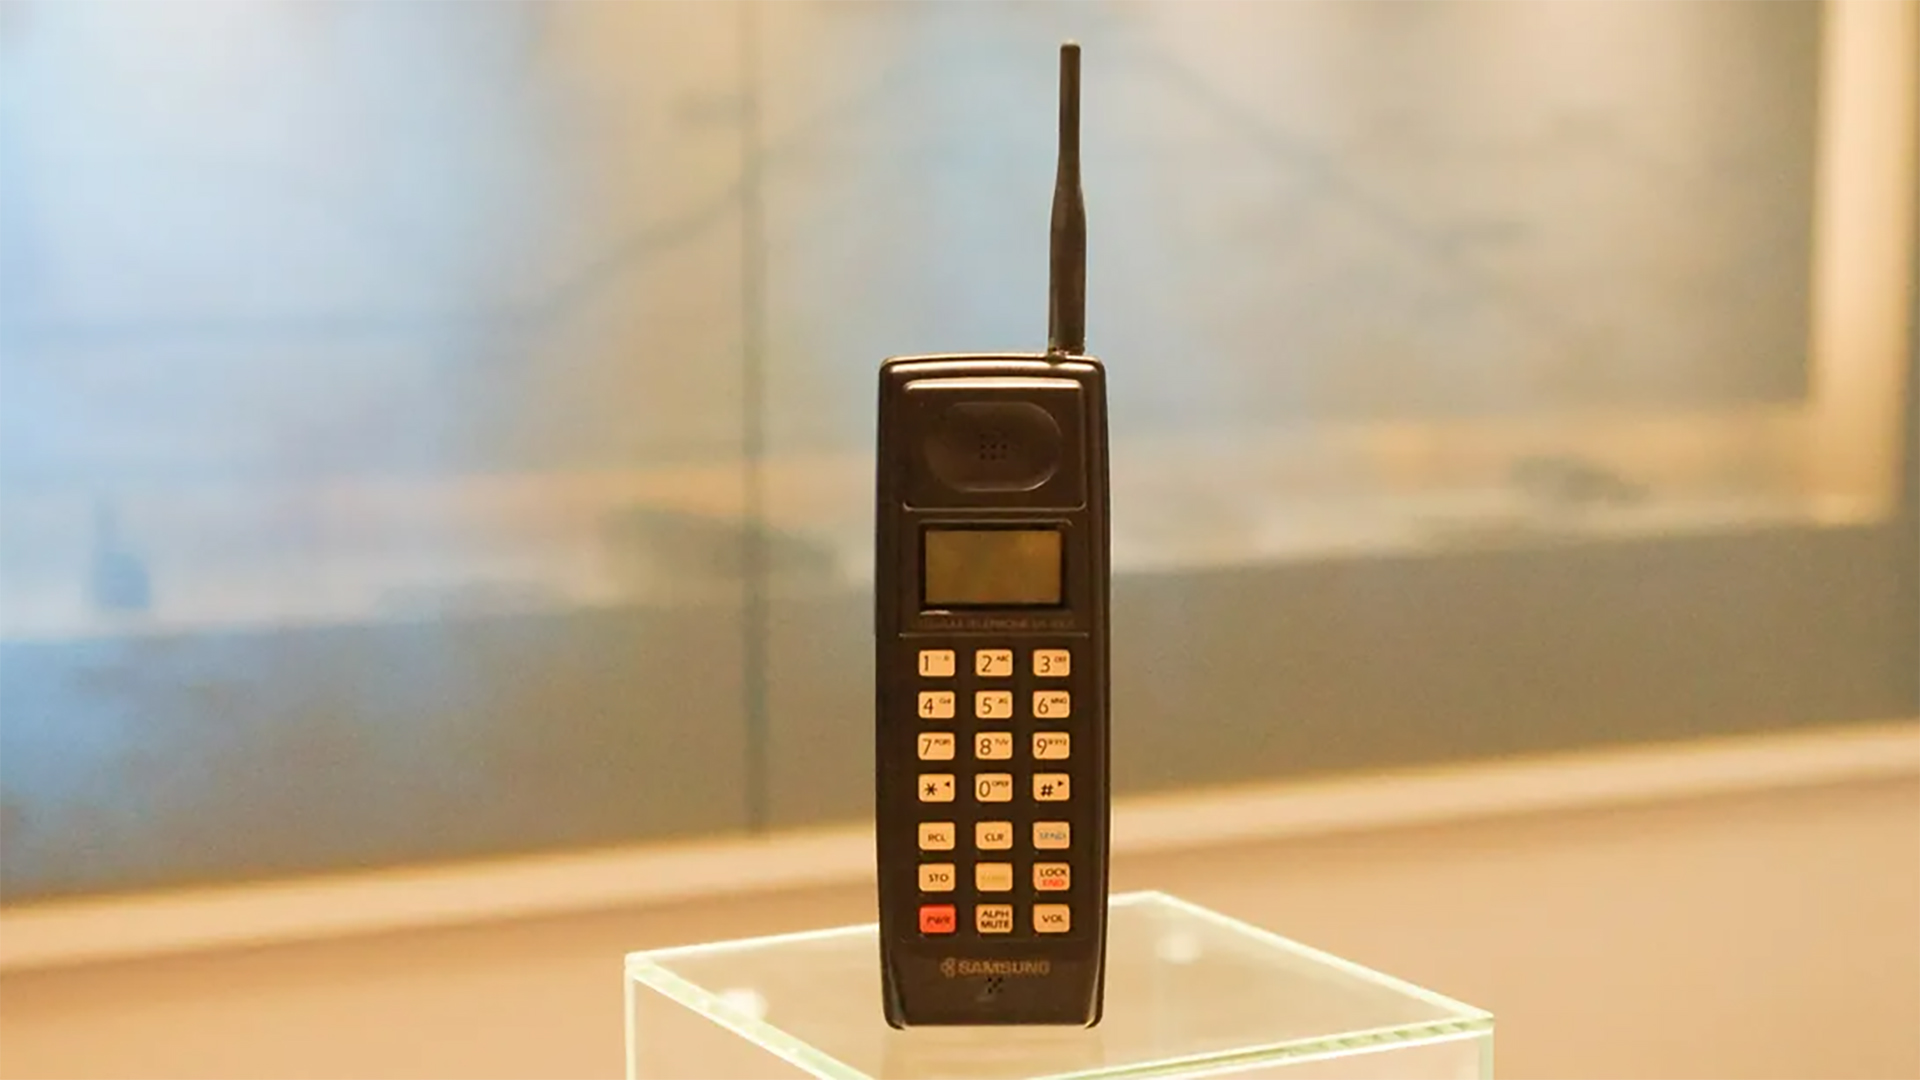 Samsung SH 100 Phone